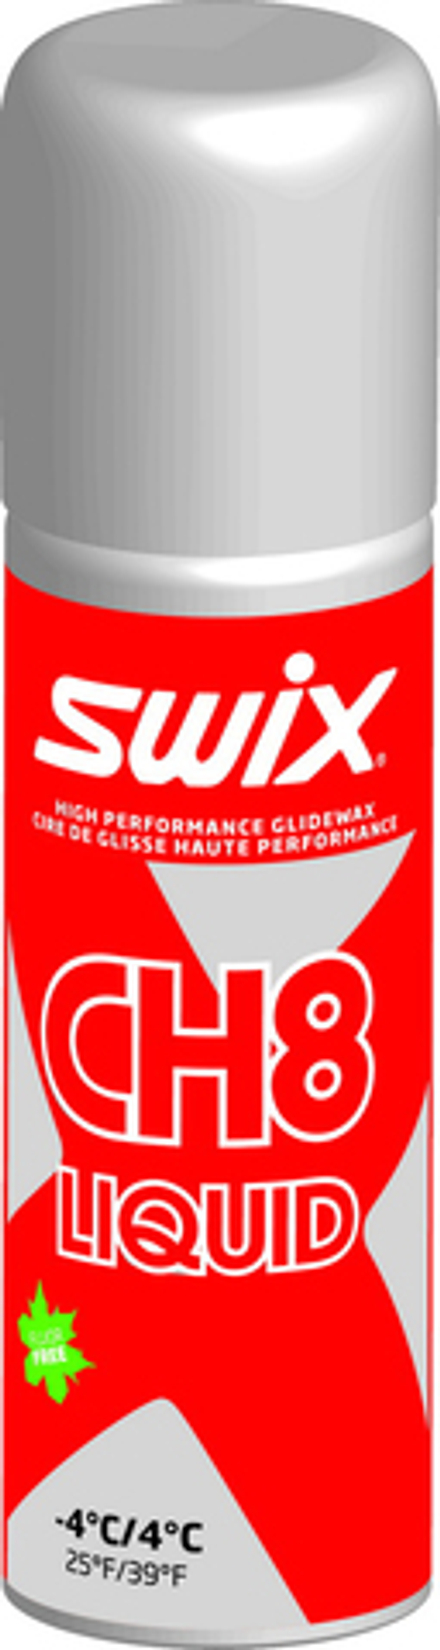 Жидкий парафин SWIX CH8XLiq, (+4-4 С), Red, 125 ml